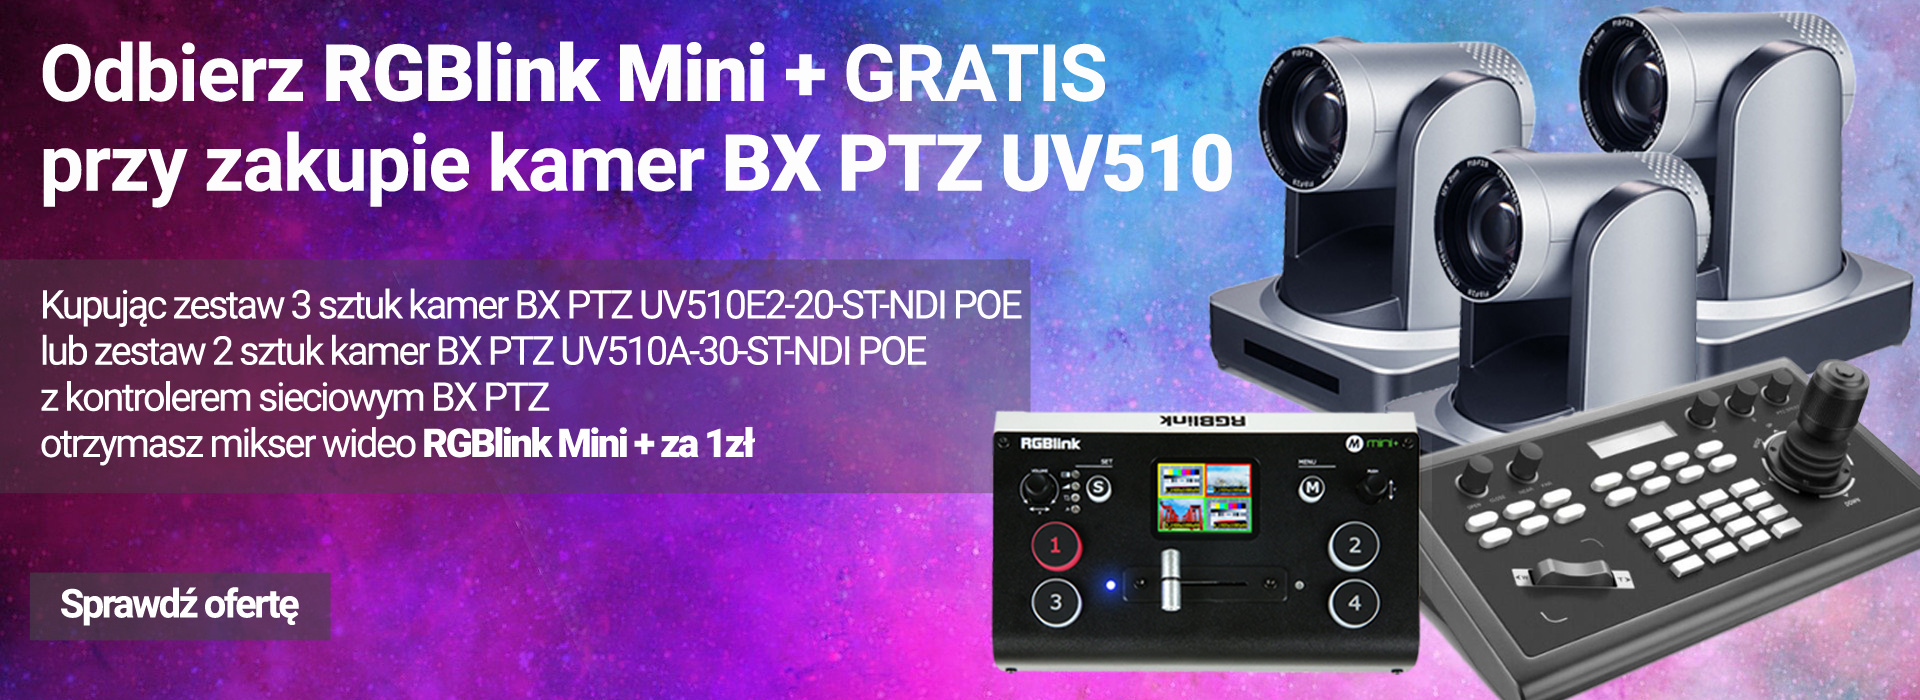 Odbierz RGBlink Mini + GRATIS przy zakupie kamer BX PTZ UV510